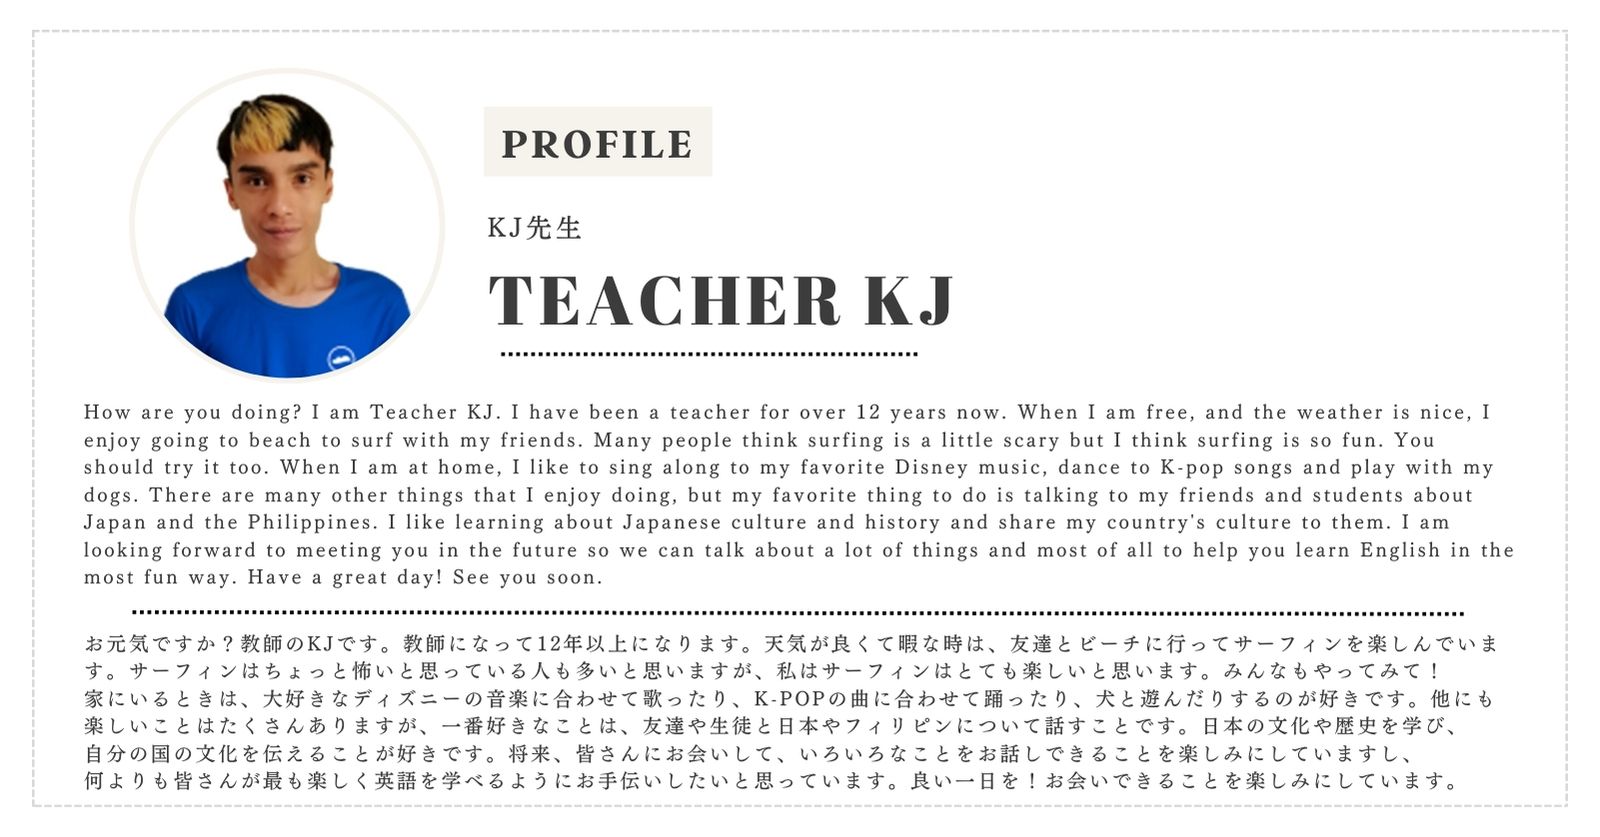 Teacher KJ